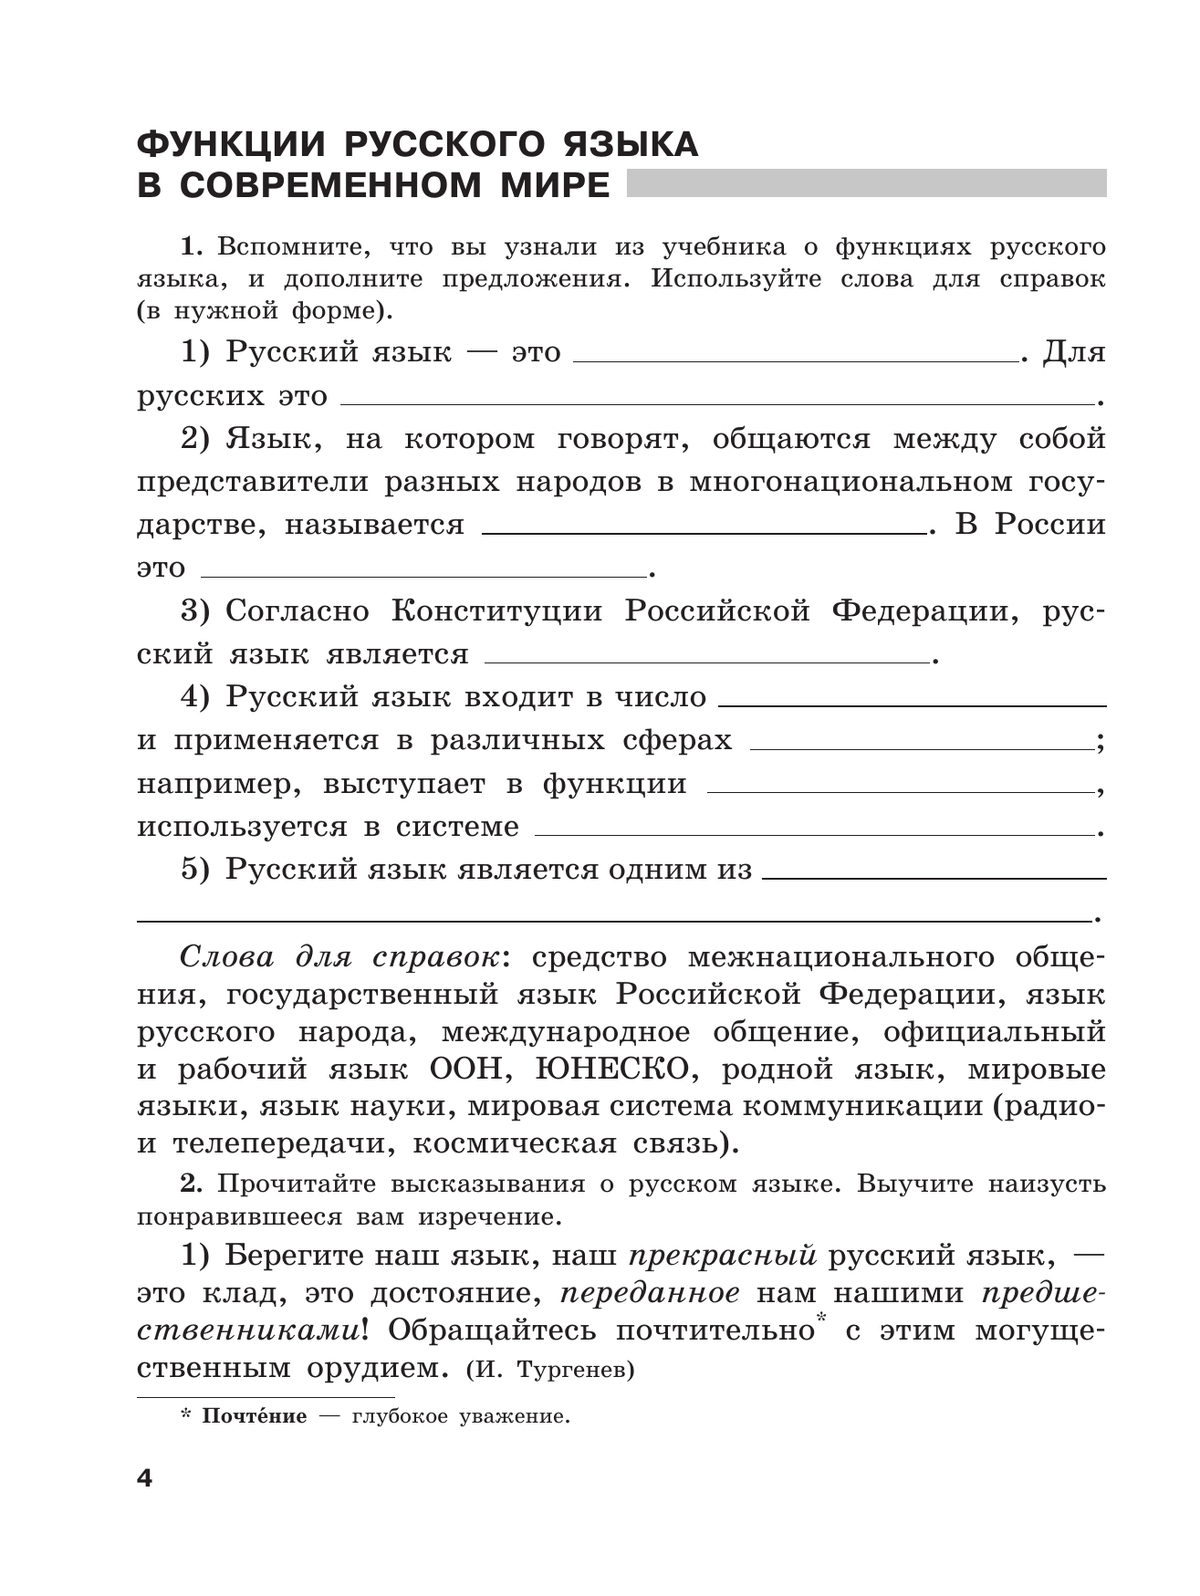 Скорая помощь по русскому языку. Рабочая тетрадь. 8 класс. В 2 ч. Часть 1 5